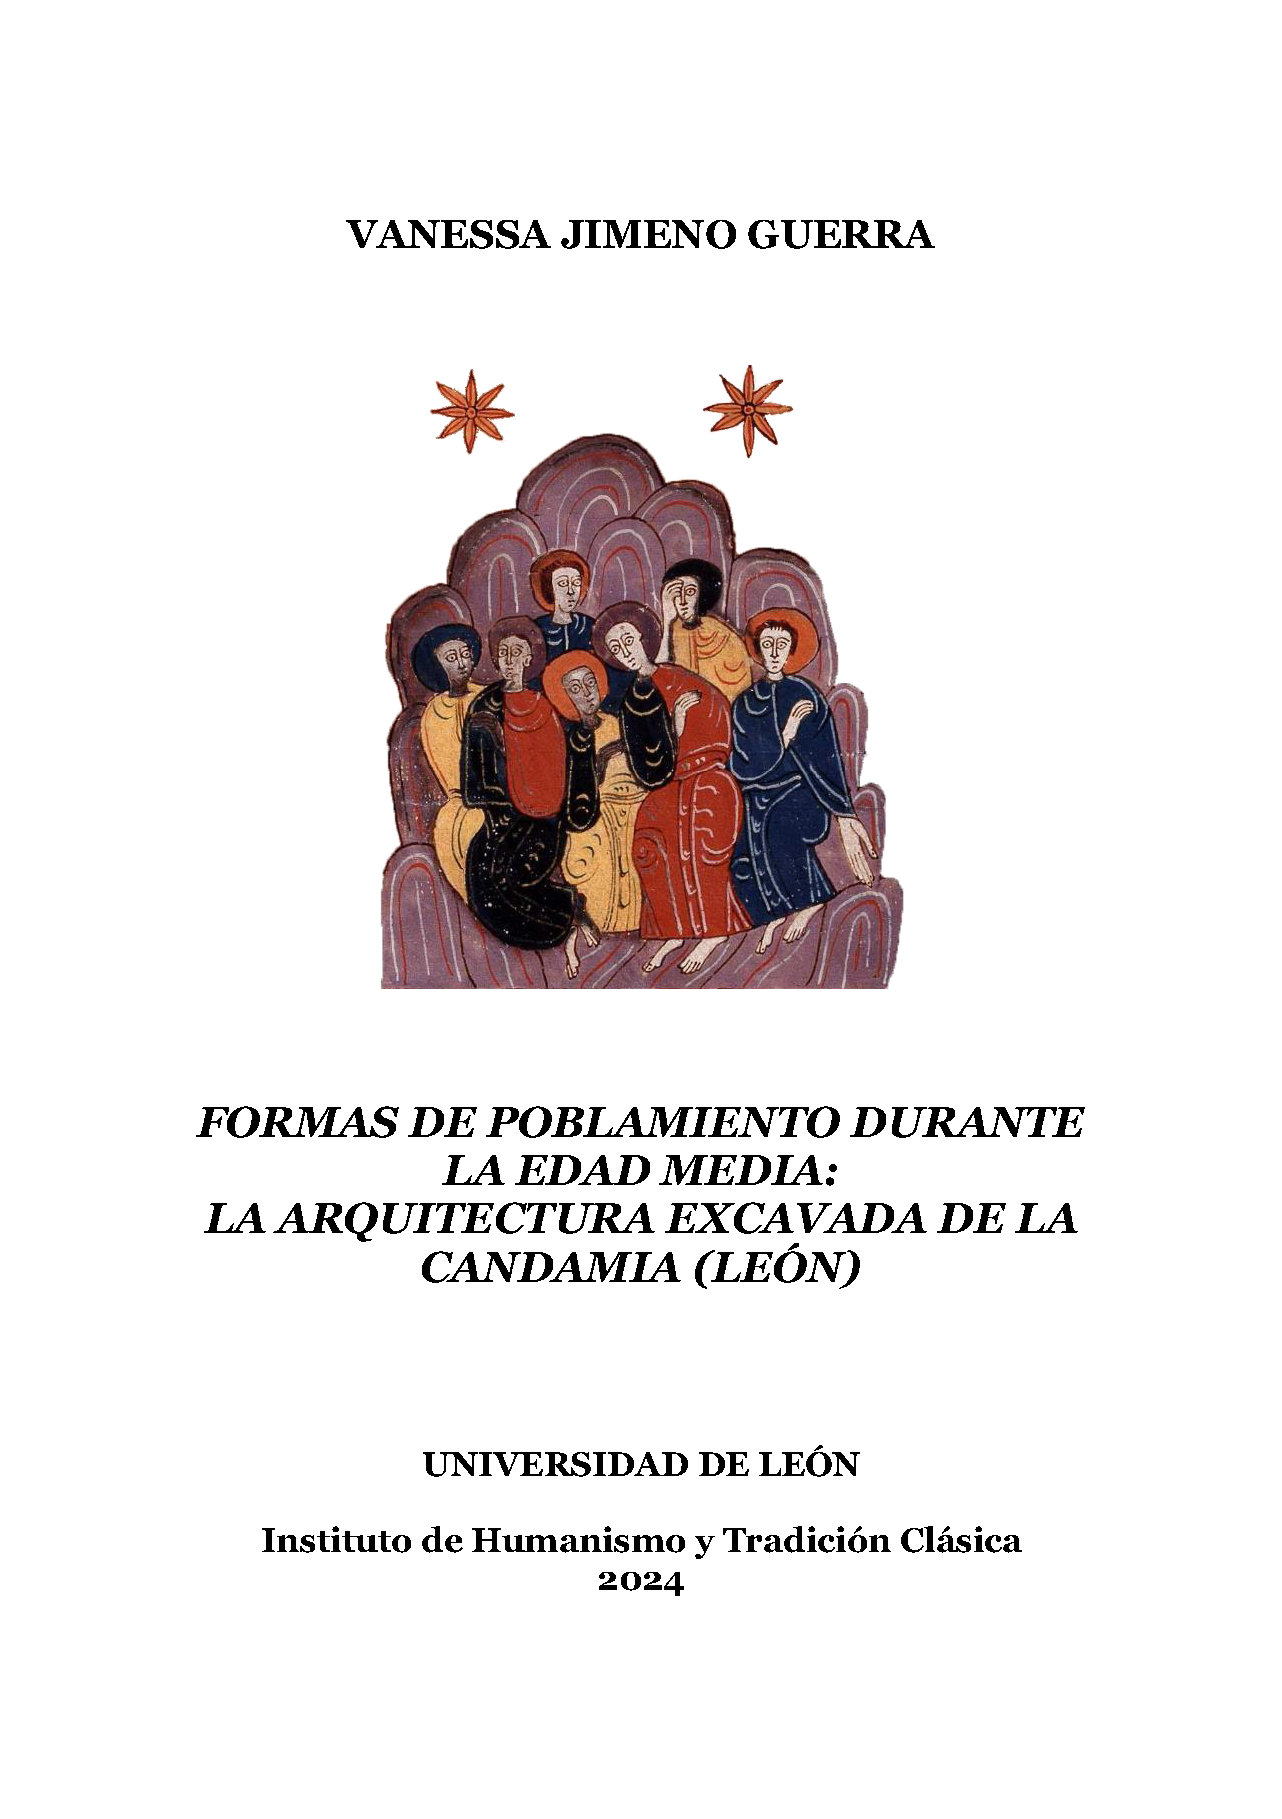 Imagen de portada del libro Formas de poblamiento durante la Edad Media